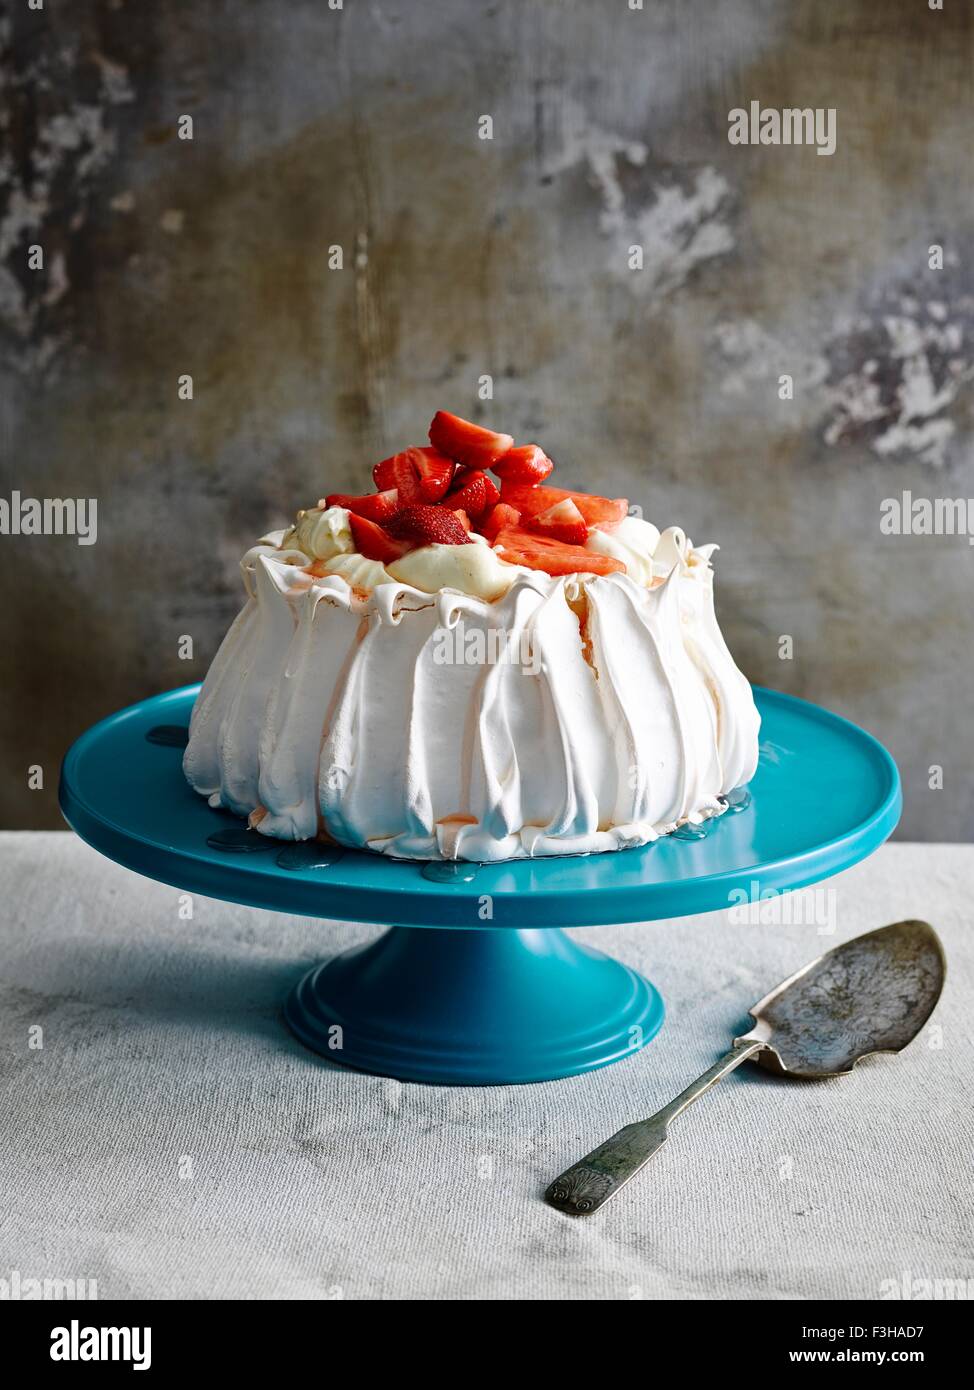 Couverte de fraises pavlova sur céramique bleu cake stand avec cake server Banque D'Images